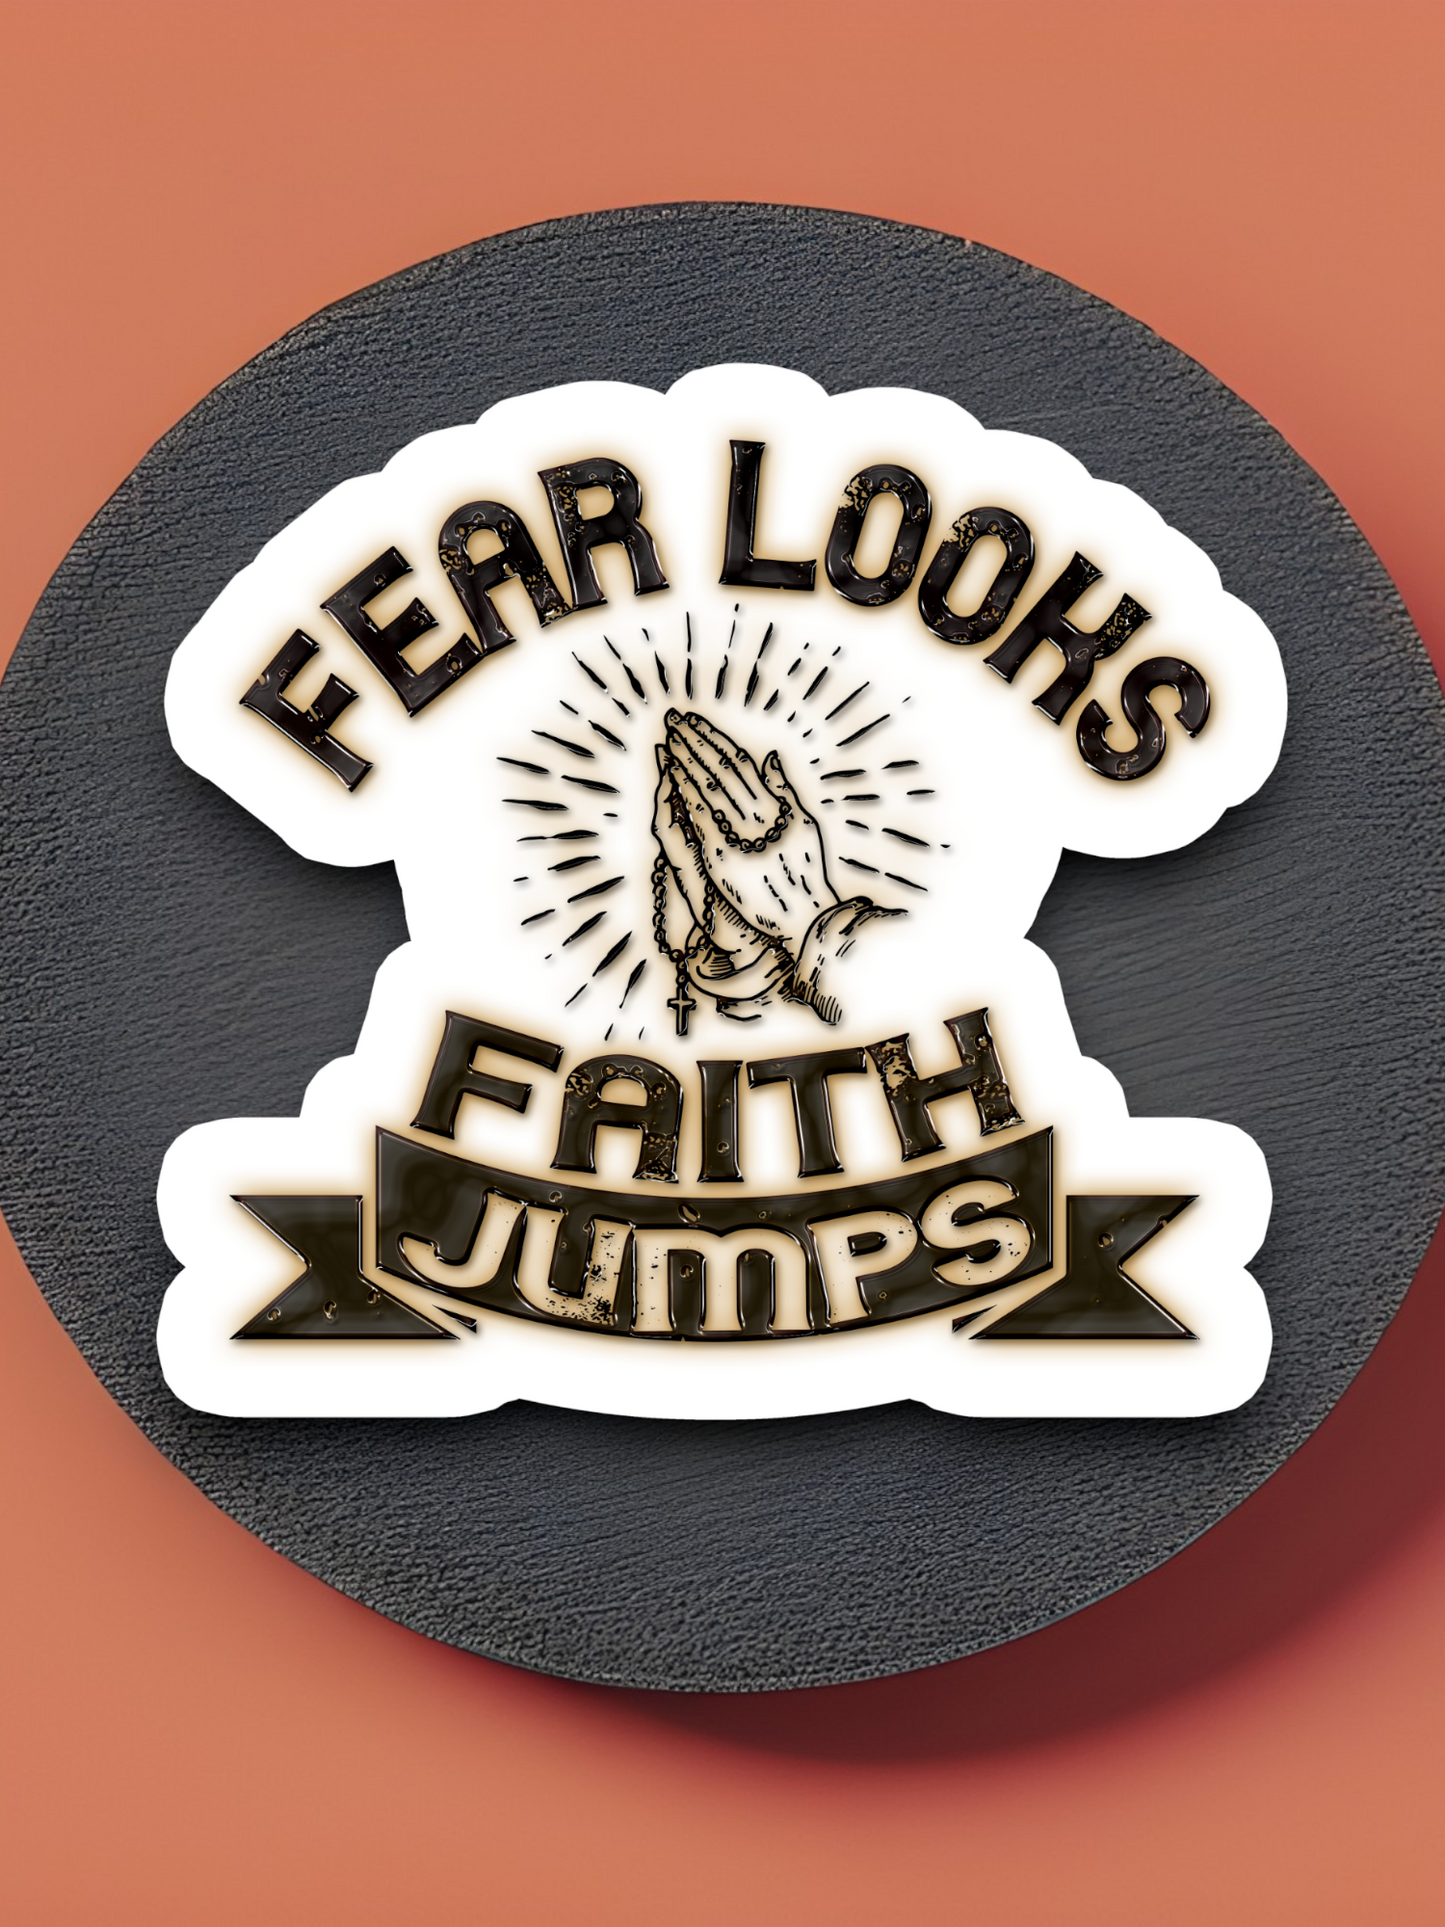 Fear Looks Faith Jumps - Faith Sticker